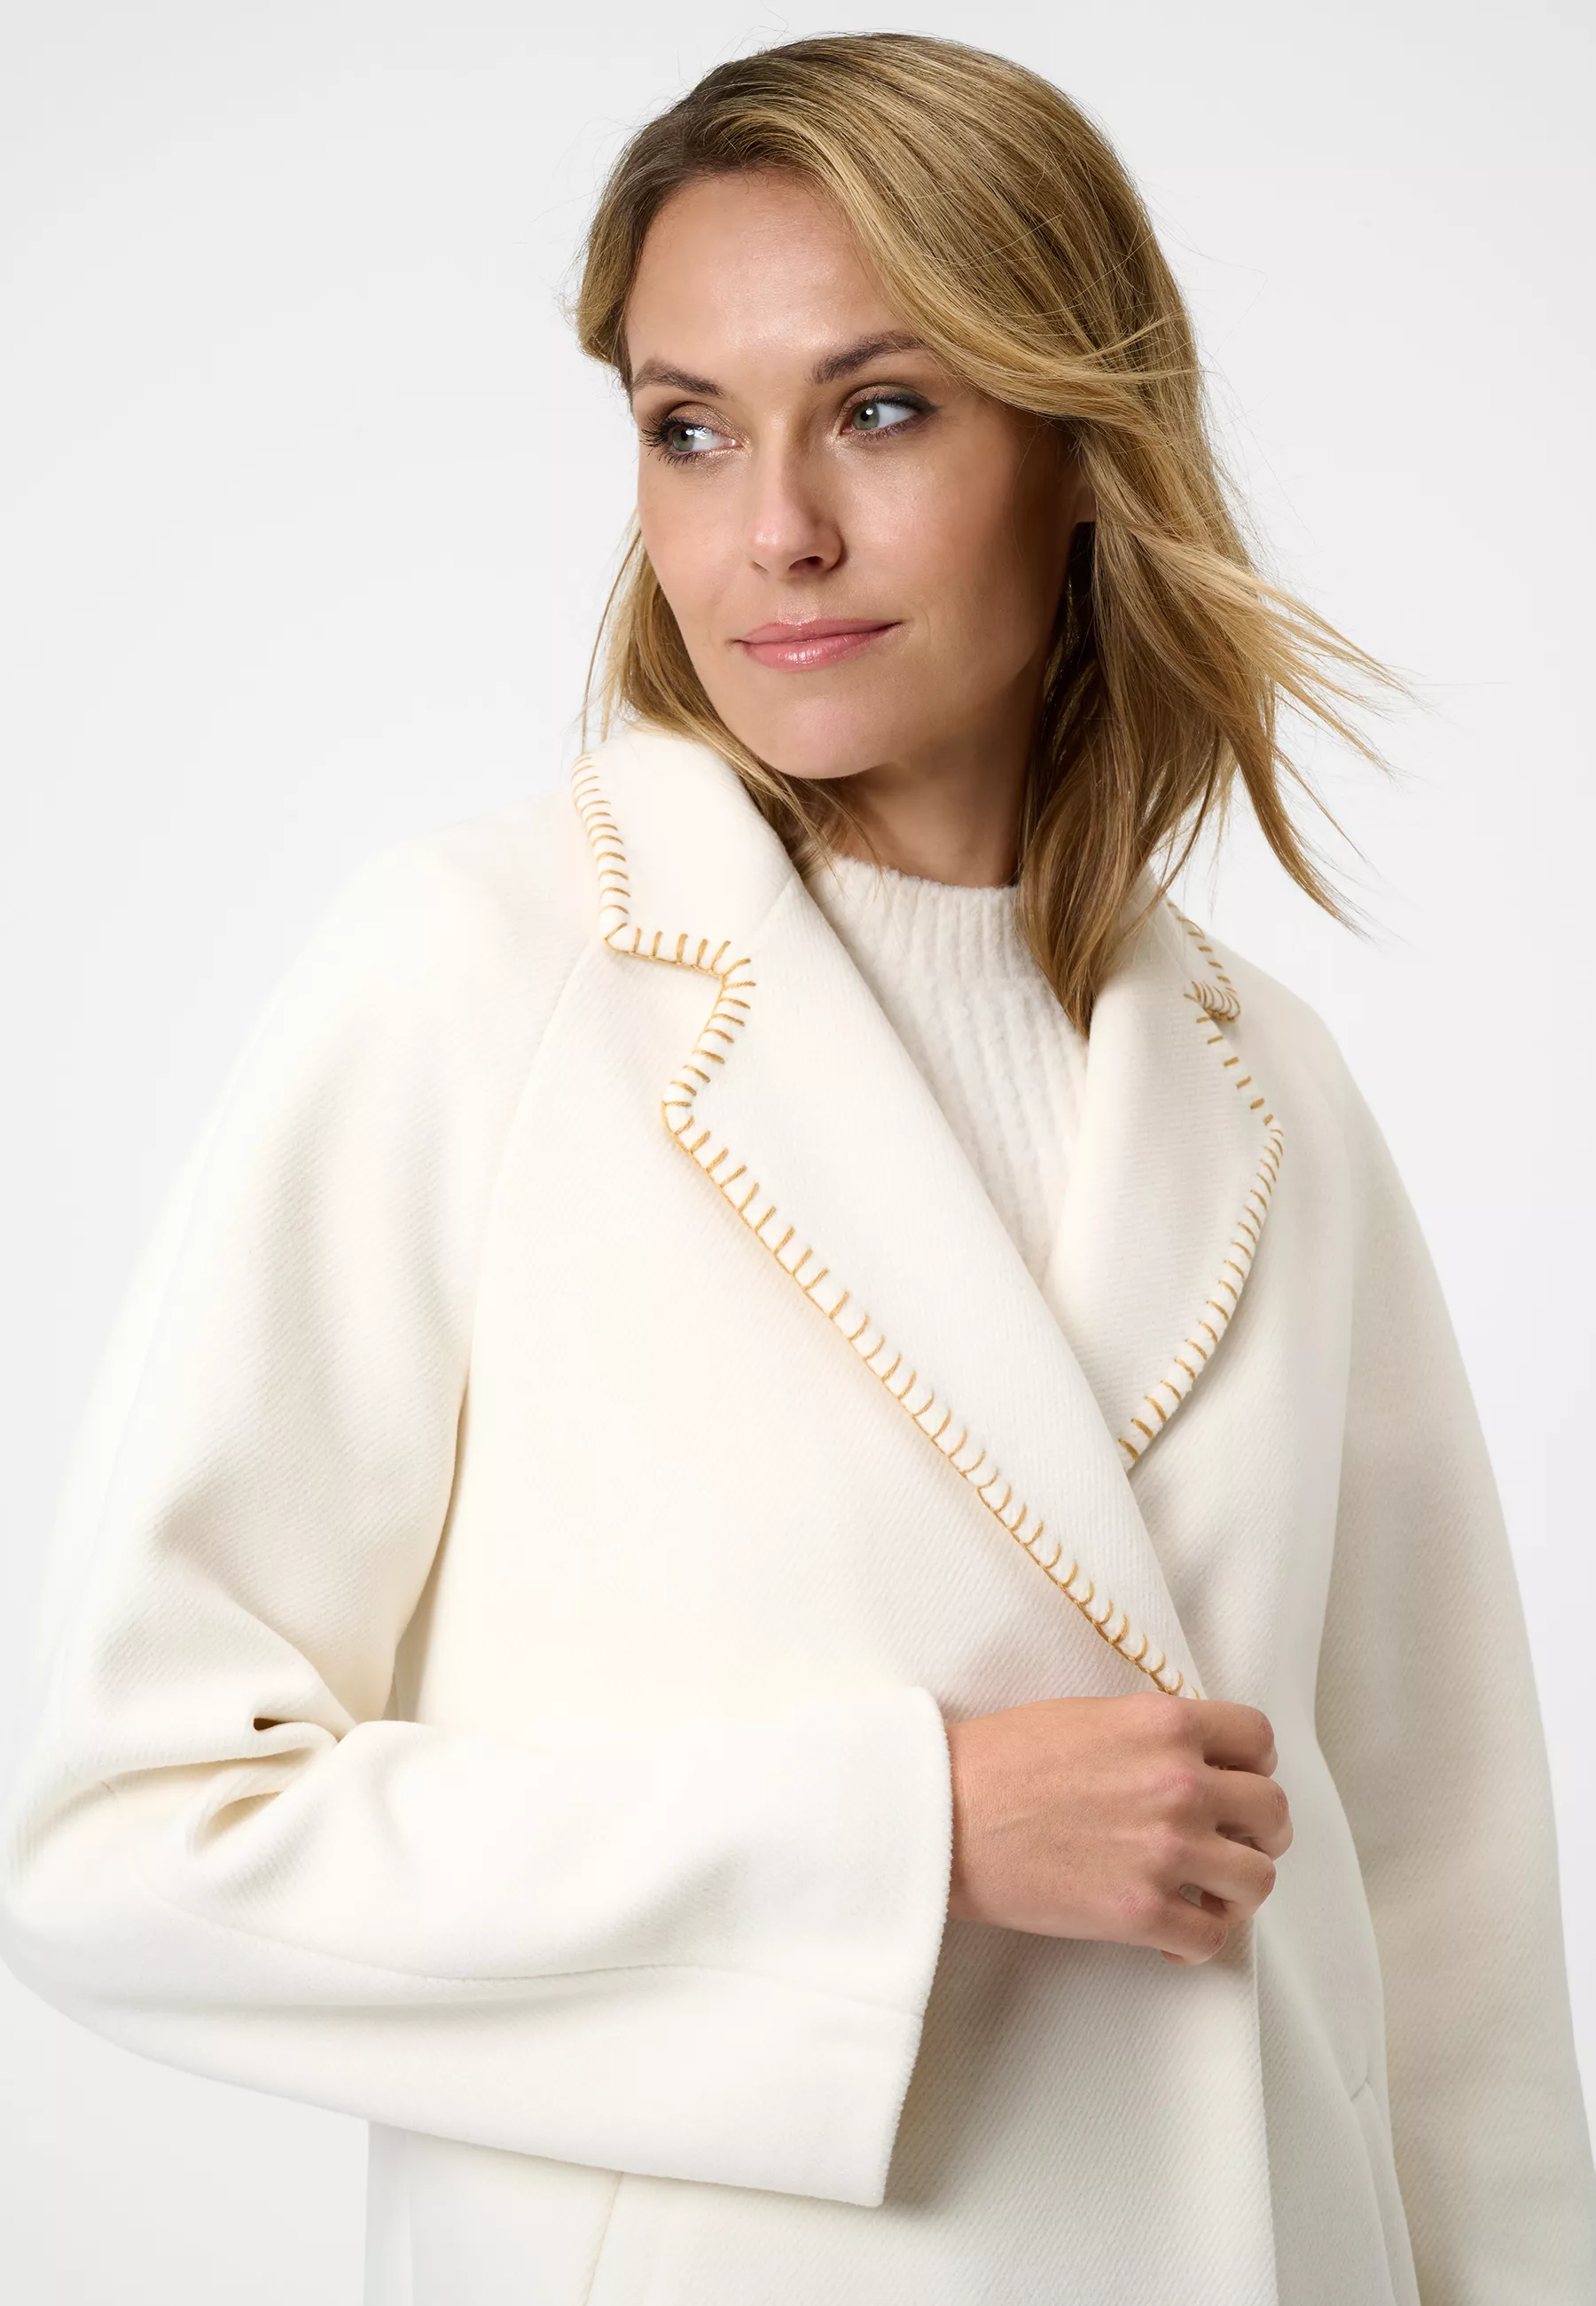 Damen Textil Mantel Silvia in Weiß von Ricano, Frontansicht am Model